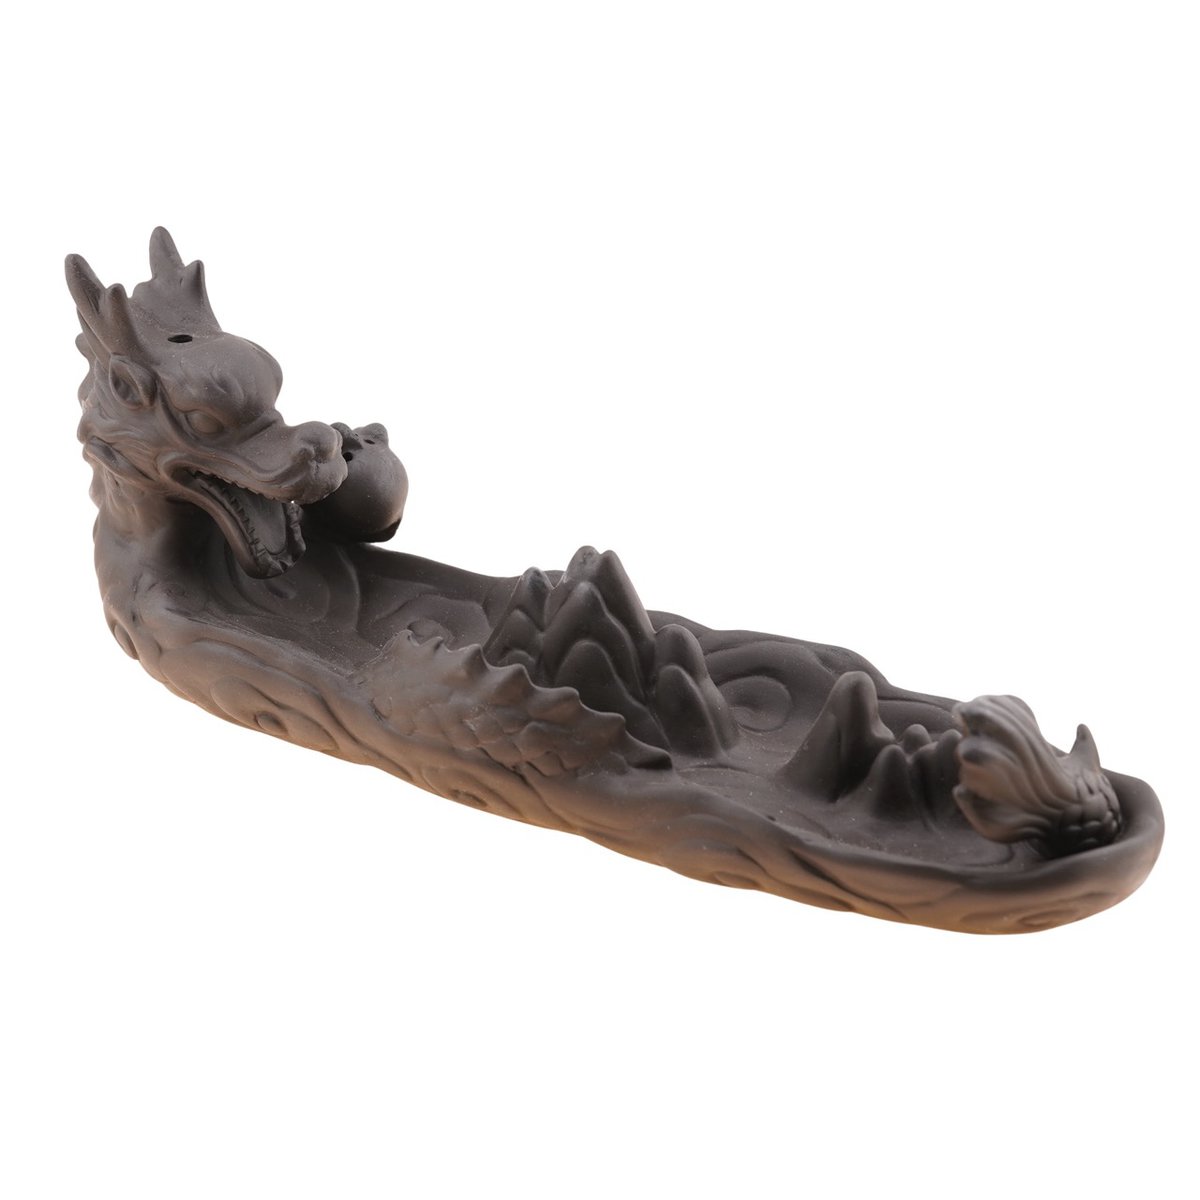 Suport din ceramica pentru ardere betisoare si conuri parfumate dragon 23cm ar9